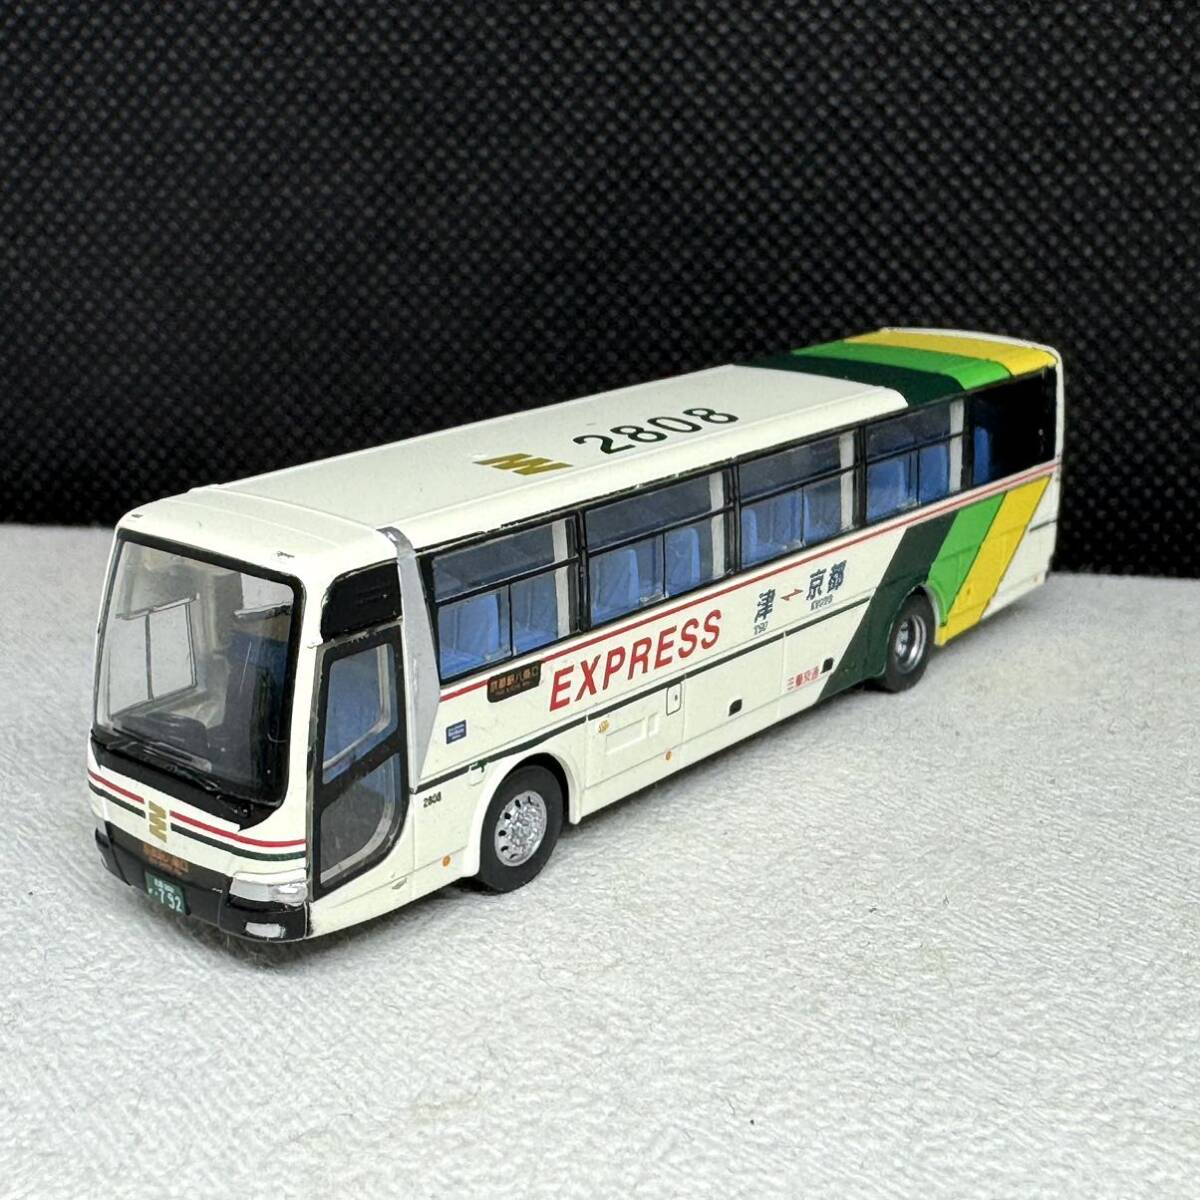 バスコレクション 三重交通 70周年記念 オリジナルバスセット 三菱ふそう エアロエース 単品_画像1